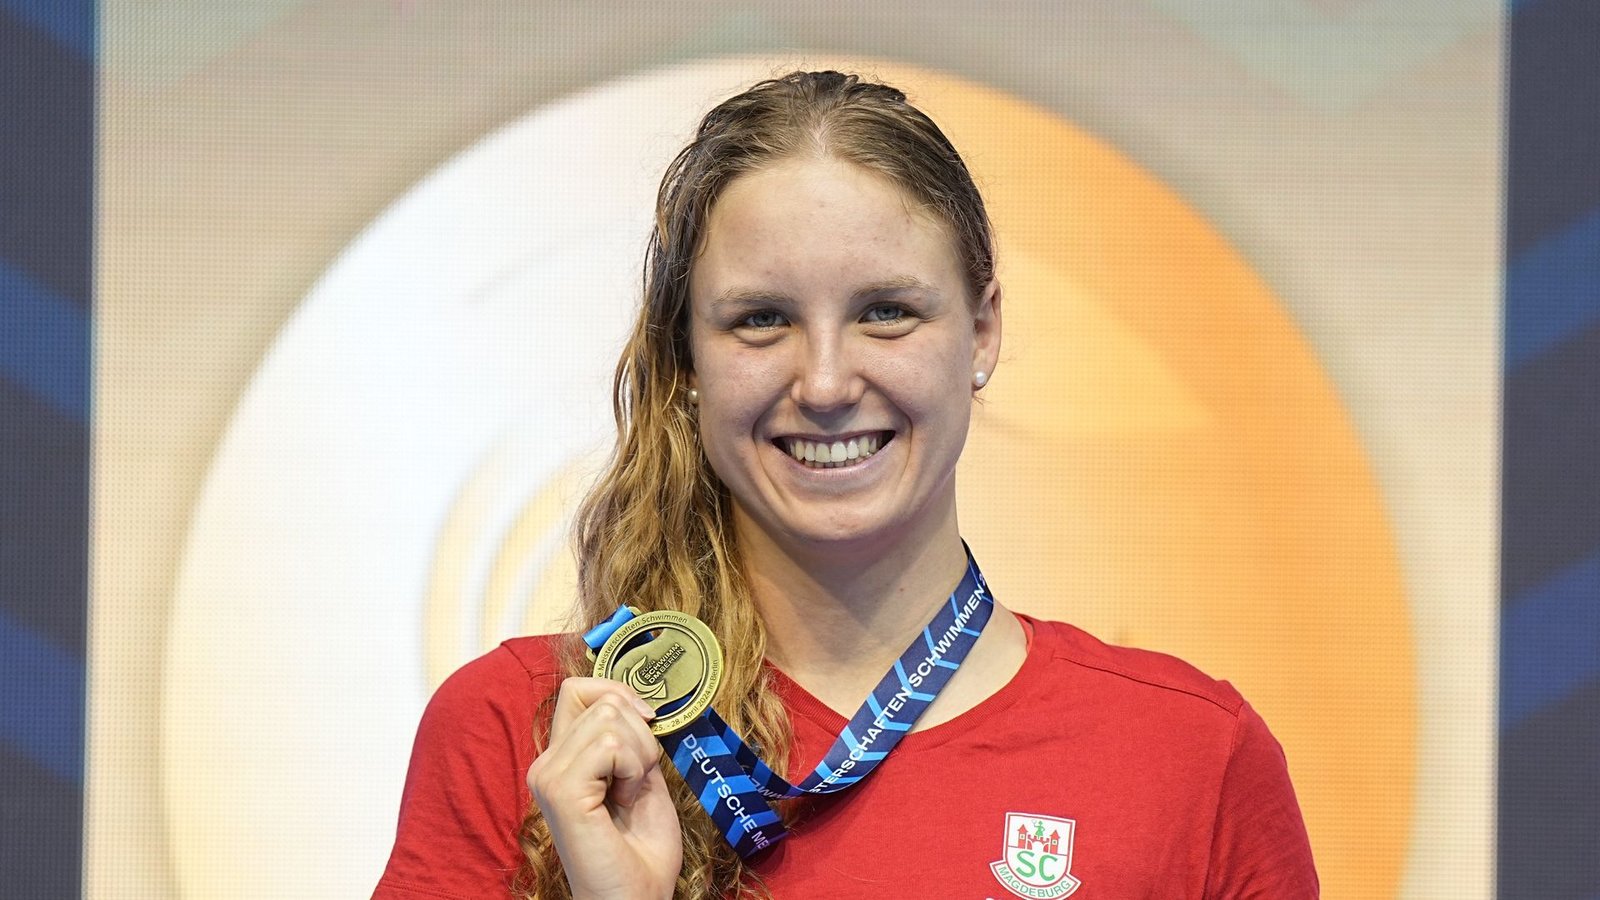 Isabel Gose räumte bei den Deutschen Meisterschaften vier Goldmedaillen ab.Foto: Michael Kappeler/dpa